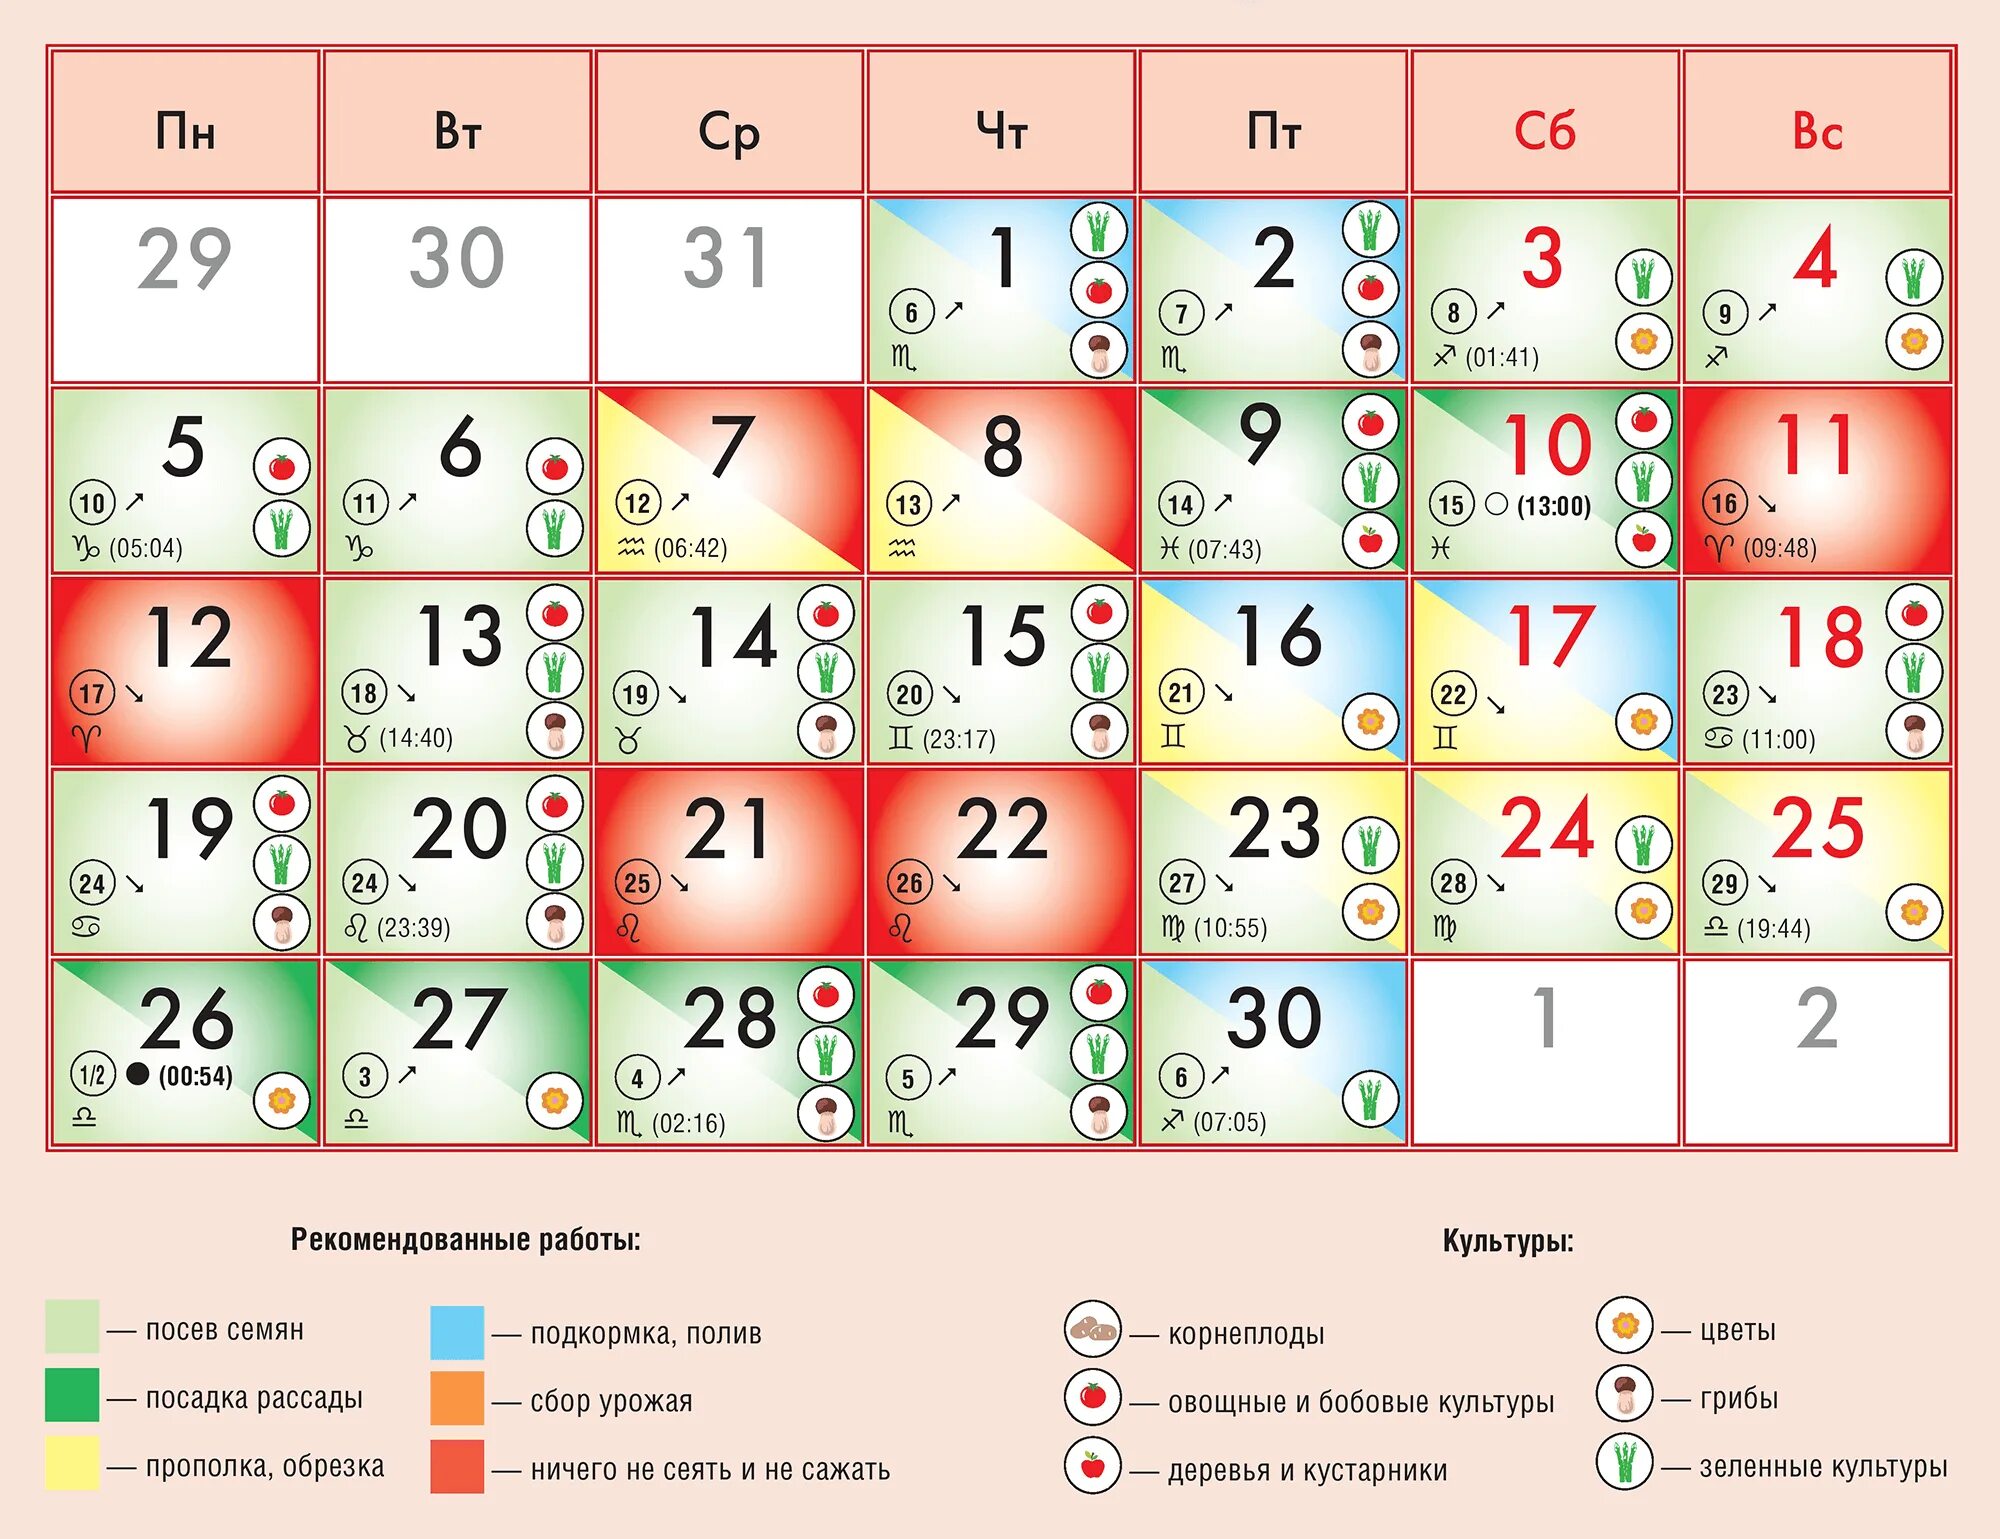 Пересадка в сентябре. Лунный календарь на сентябрь 2022. Лунный календарь на сентябрь 2022 года. Календарь благоприятных дней для посадки. Благоприятные дни посадки в сентябре 2022 г.